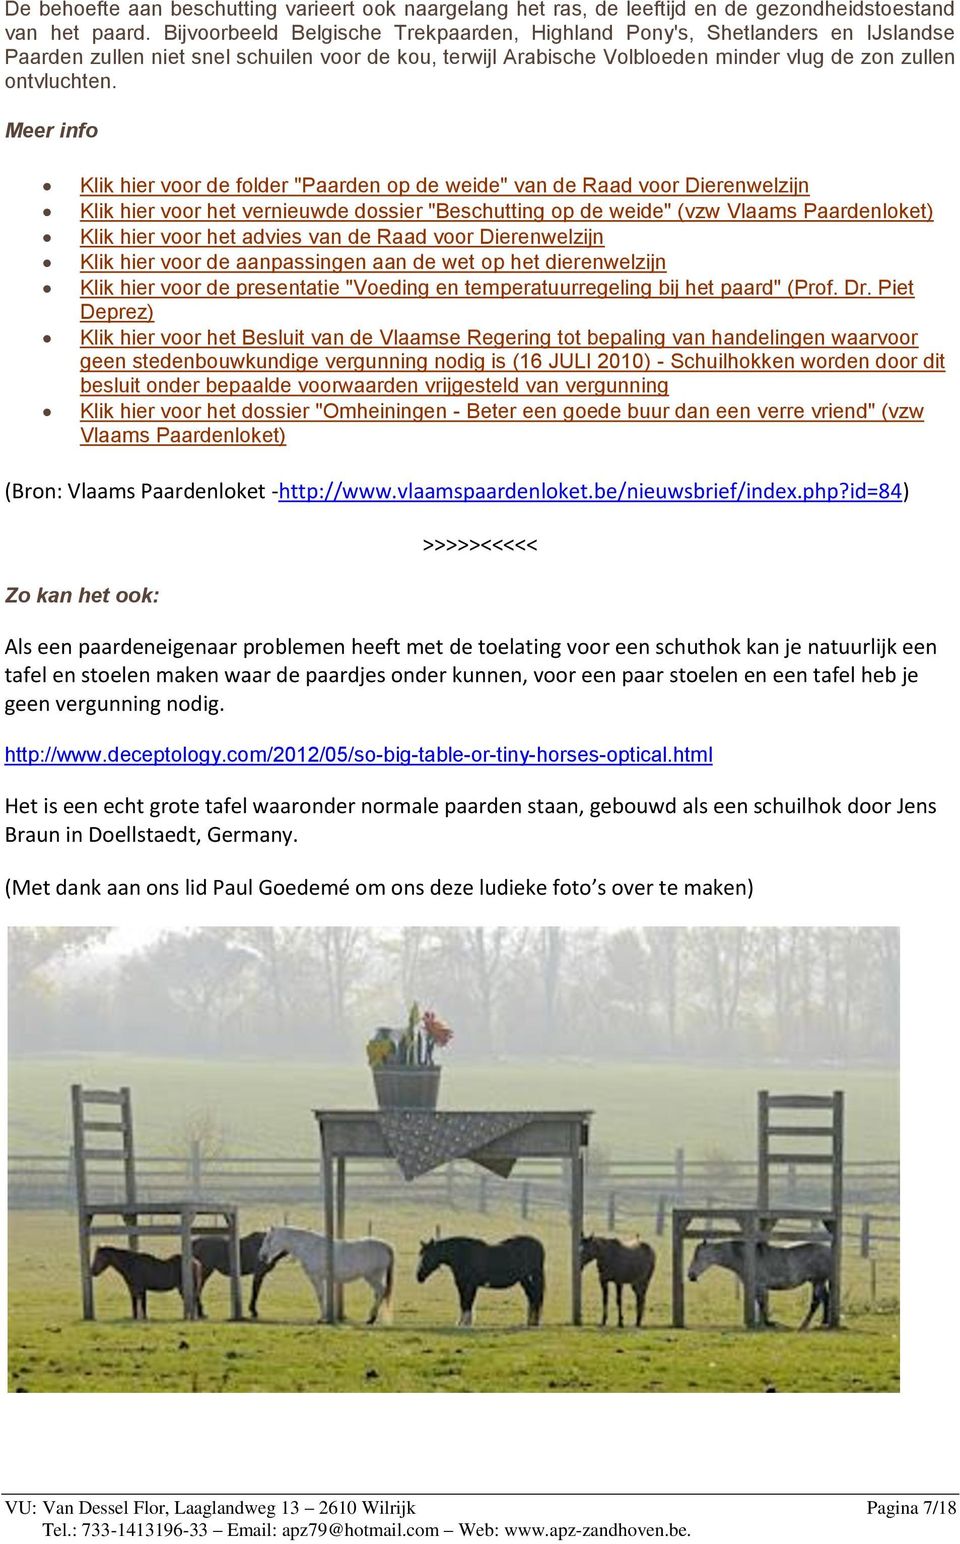 Meer info Klik hier voor de folder "Paarden op de weide" van de Raad voor Dierenwelzijn Klik hier voor het vernieuwde dossier "Beschutting op de weide" (vzw Vlaams Paardenloket) Klik hier voor het